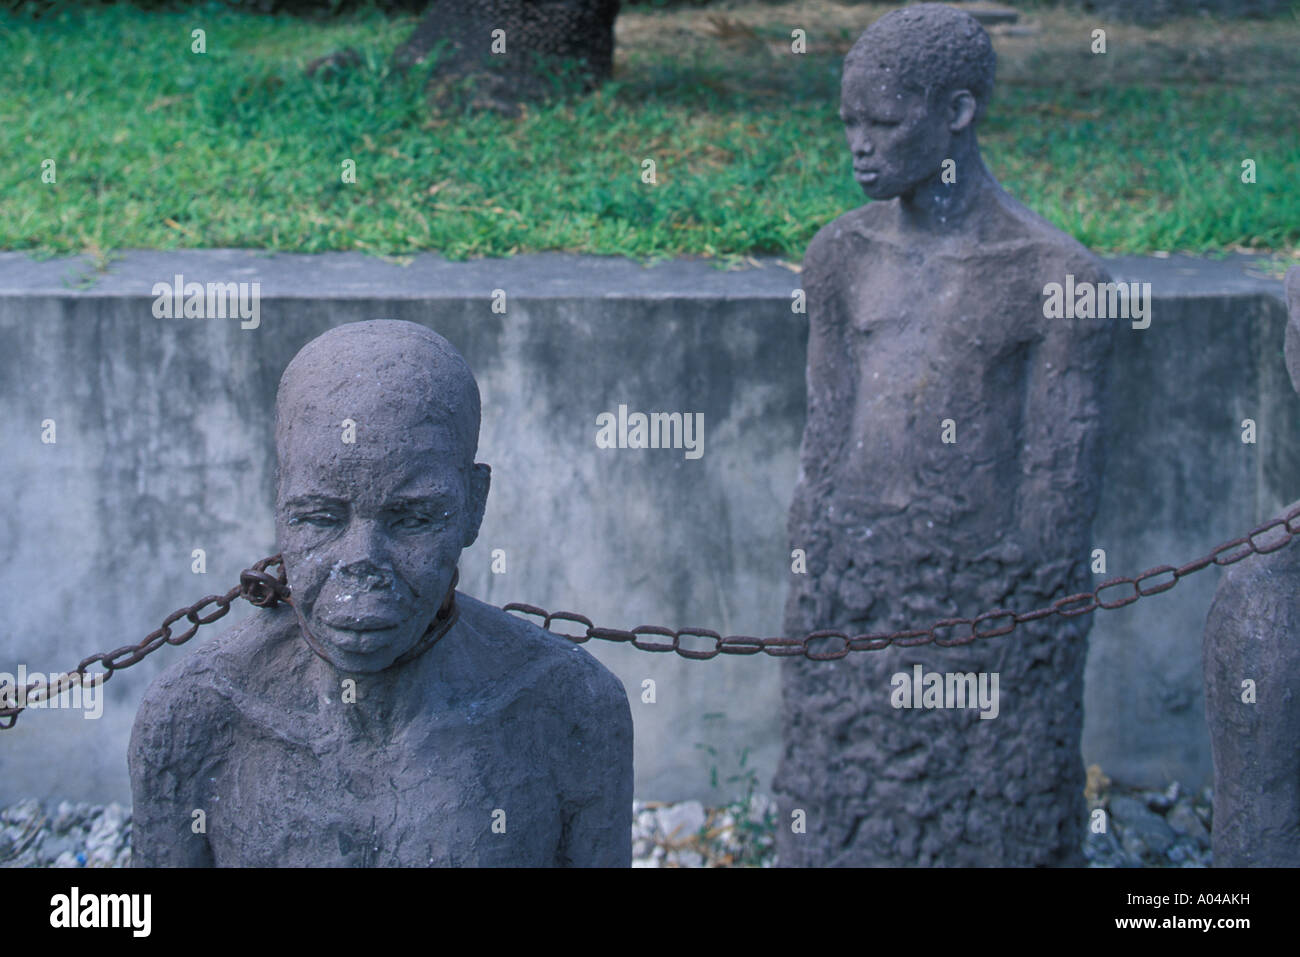 Esclavos Africanos Encadenados Fotograf As E Im Genes De Alta Resoluci N Alamy